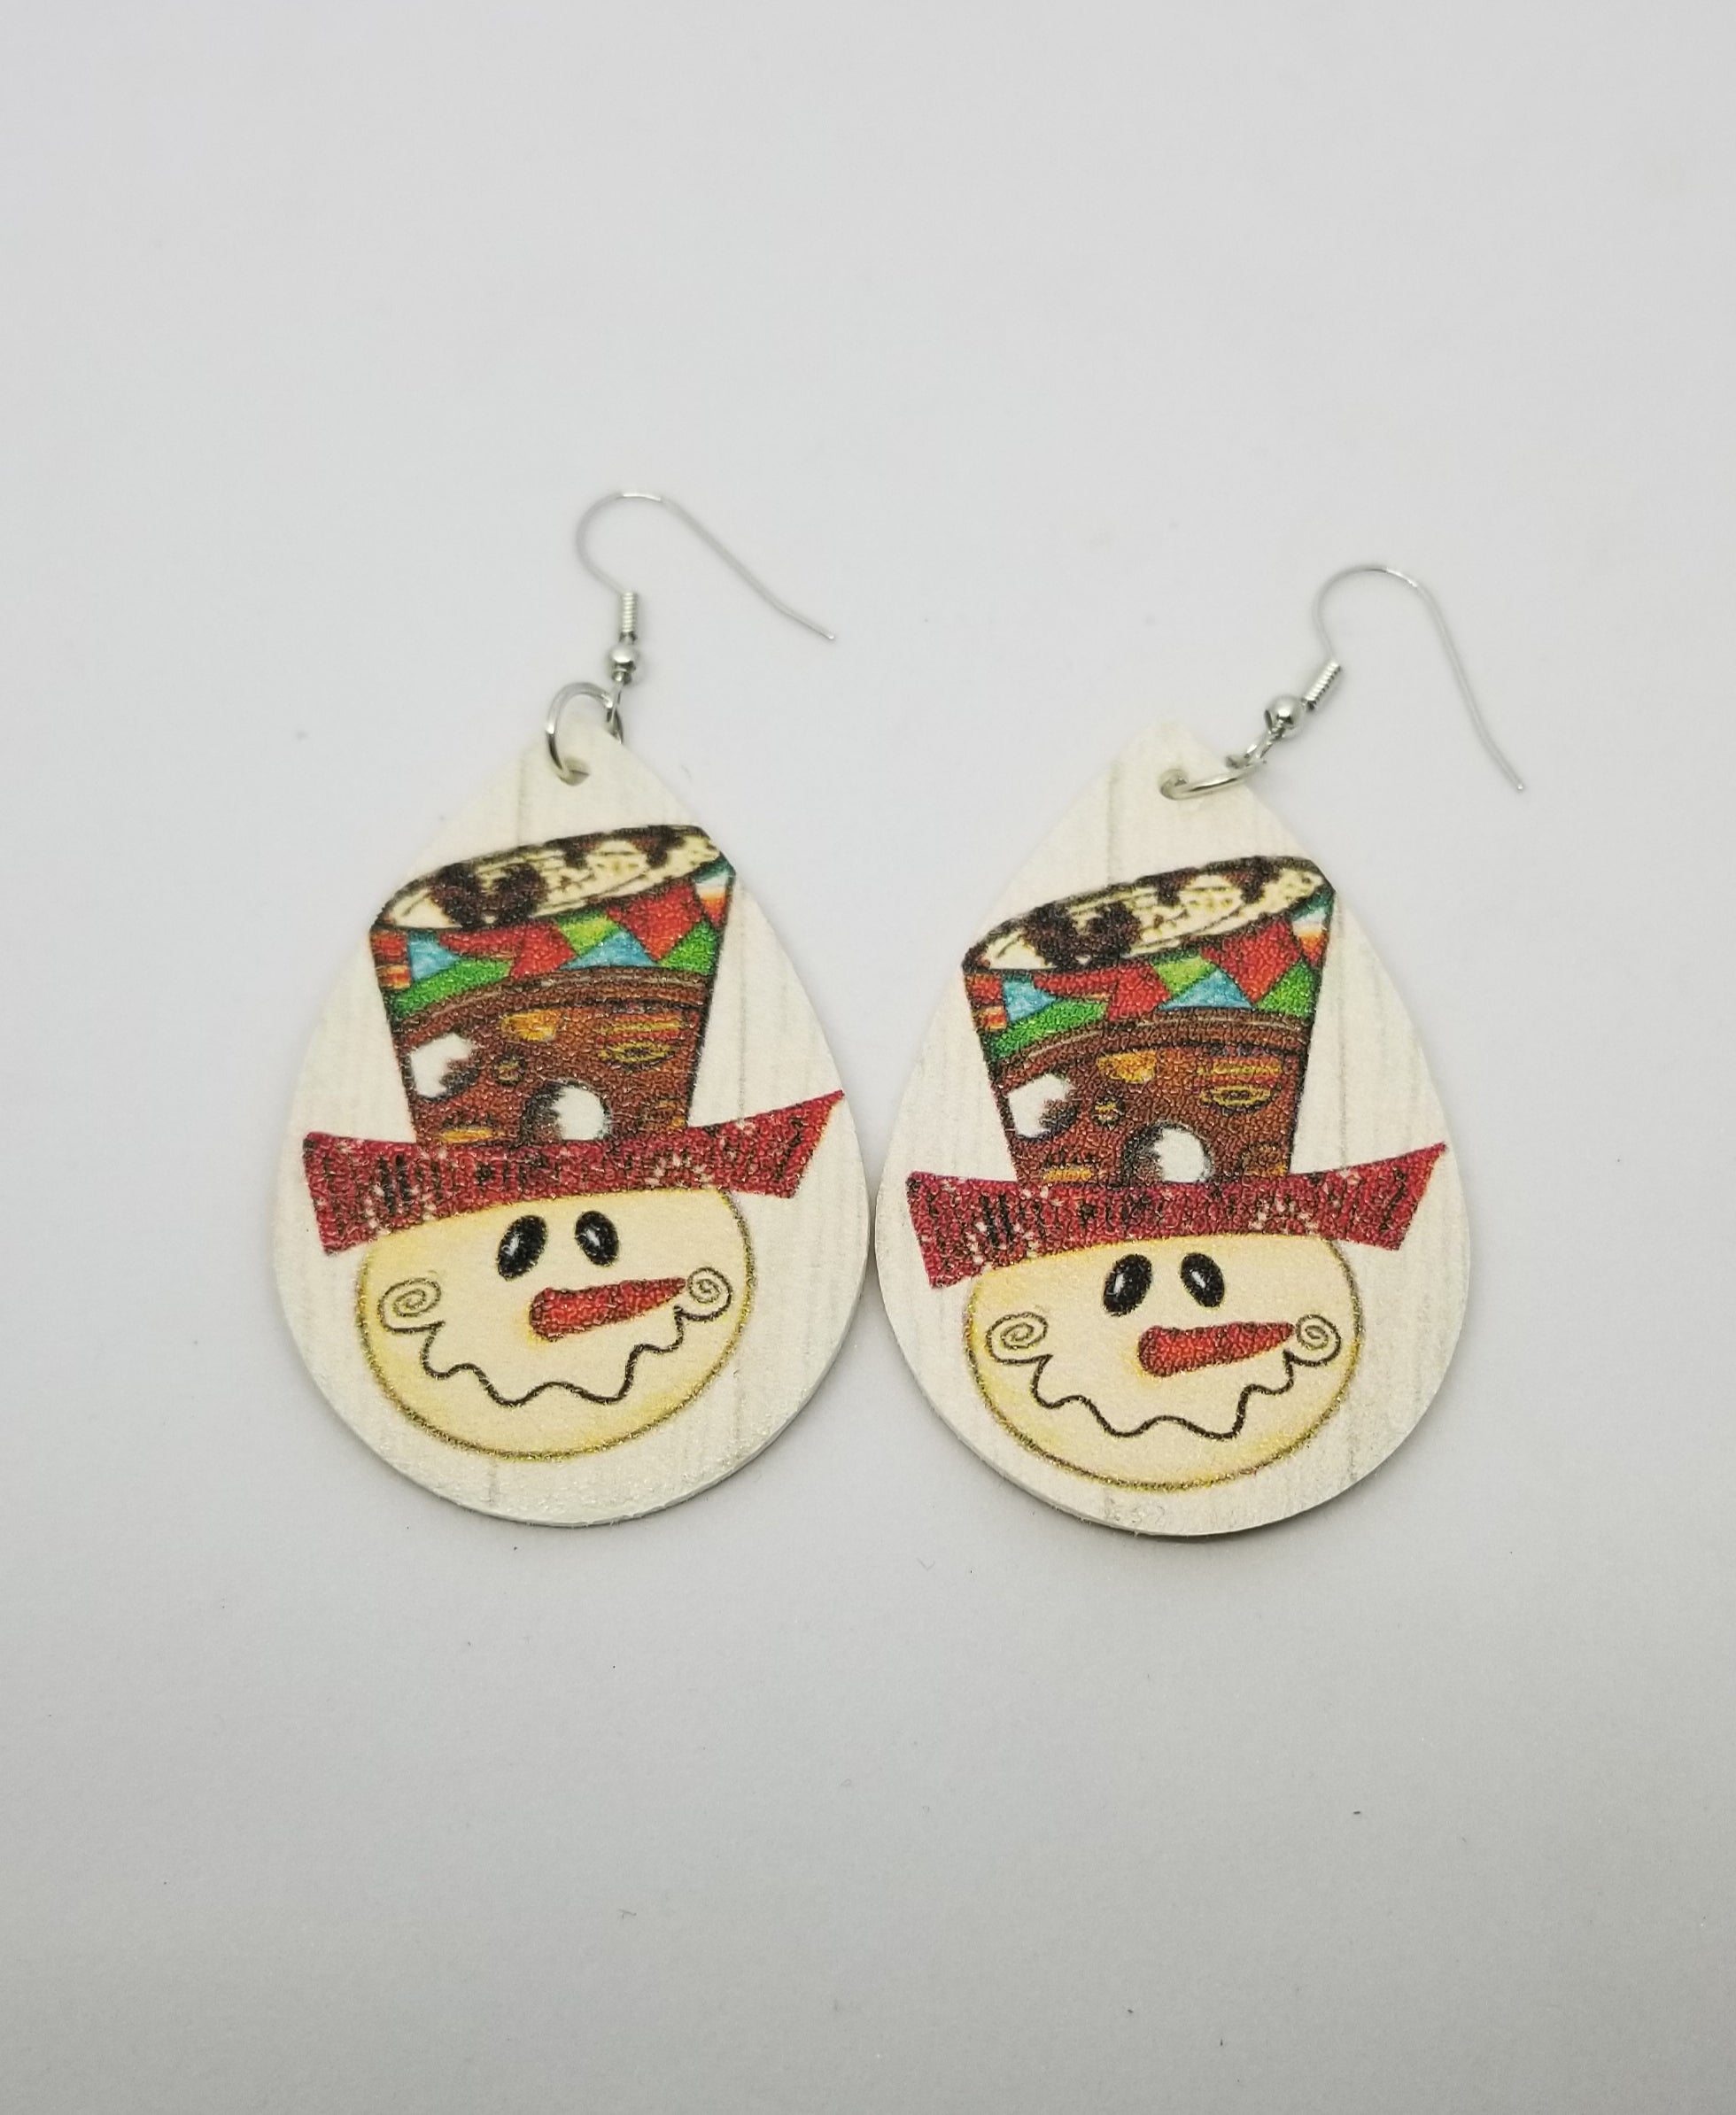 Snowman Teardrop Christmas / Winter Earrings - Double-sided